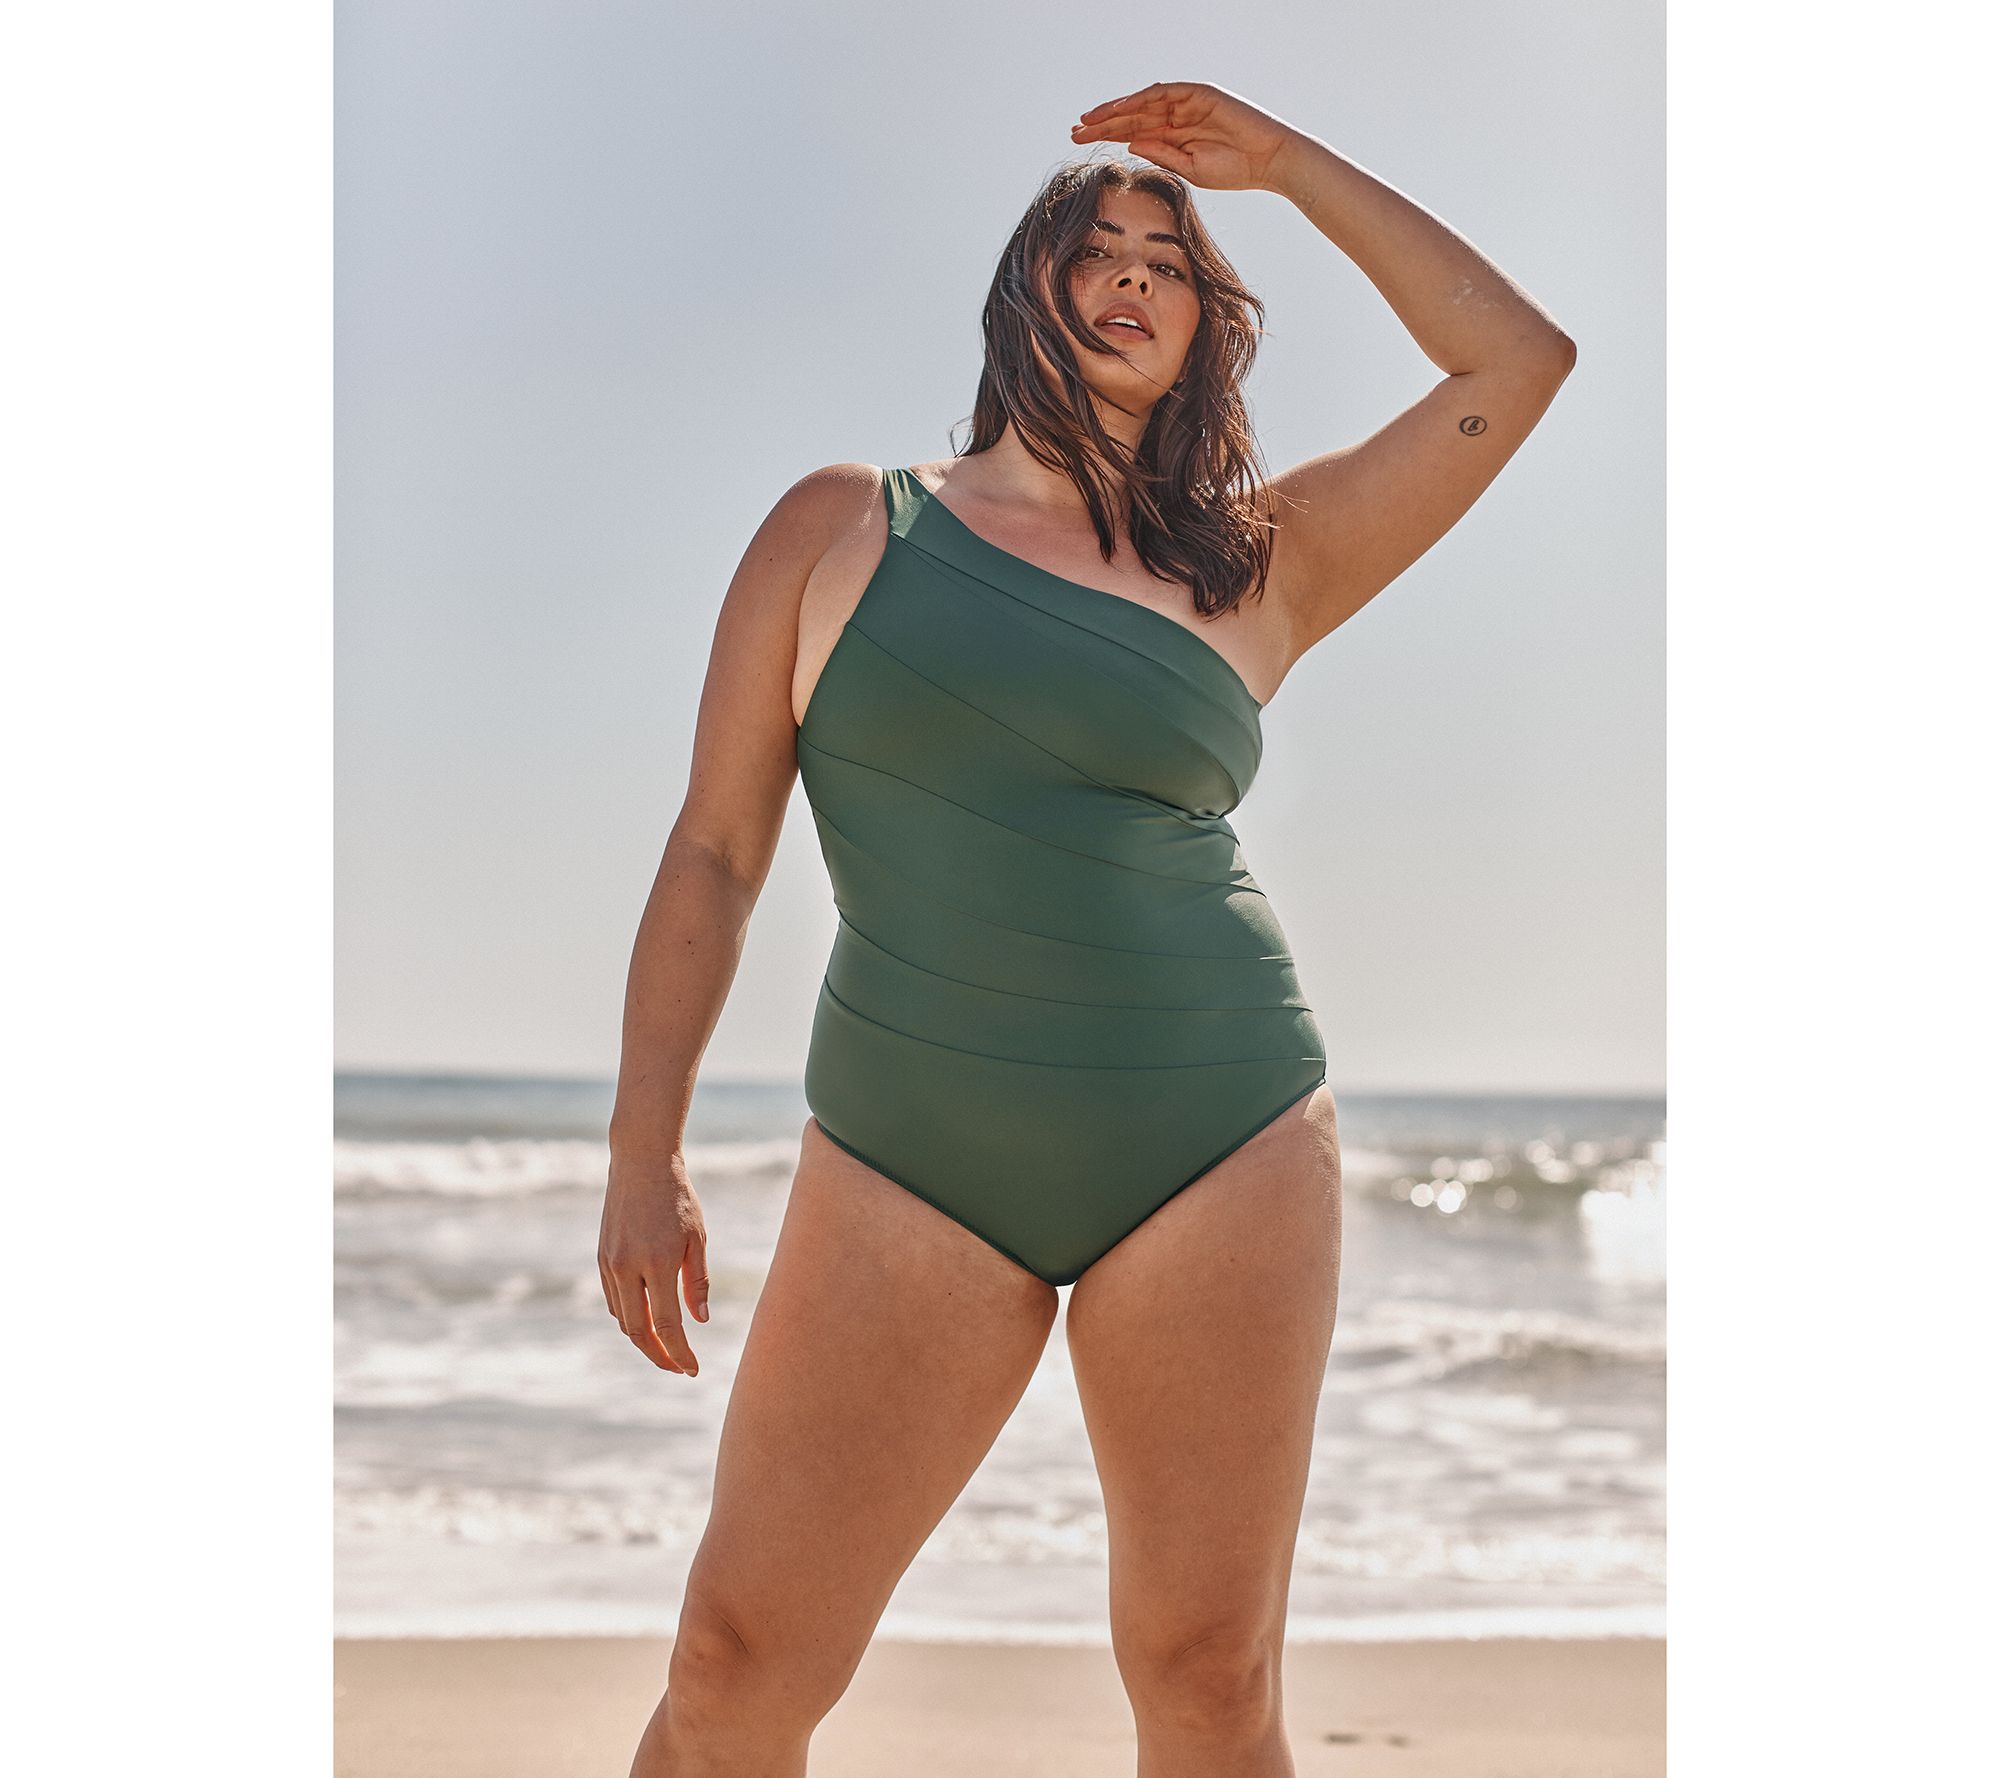 Summersalt Plus-Size Swim: A Bathing Suit Review - The Mom Edit